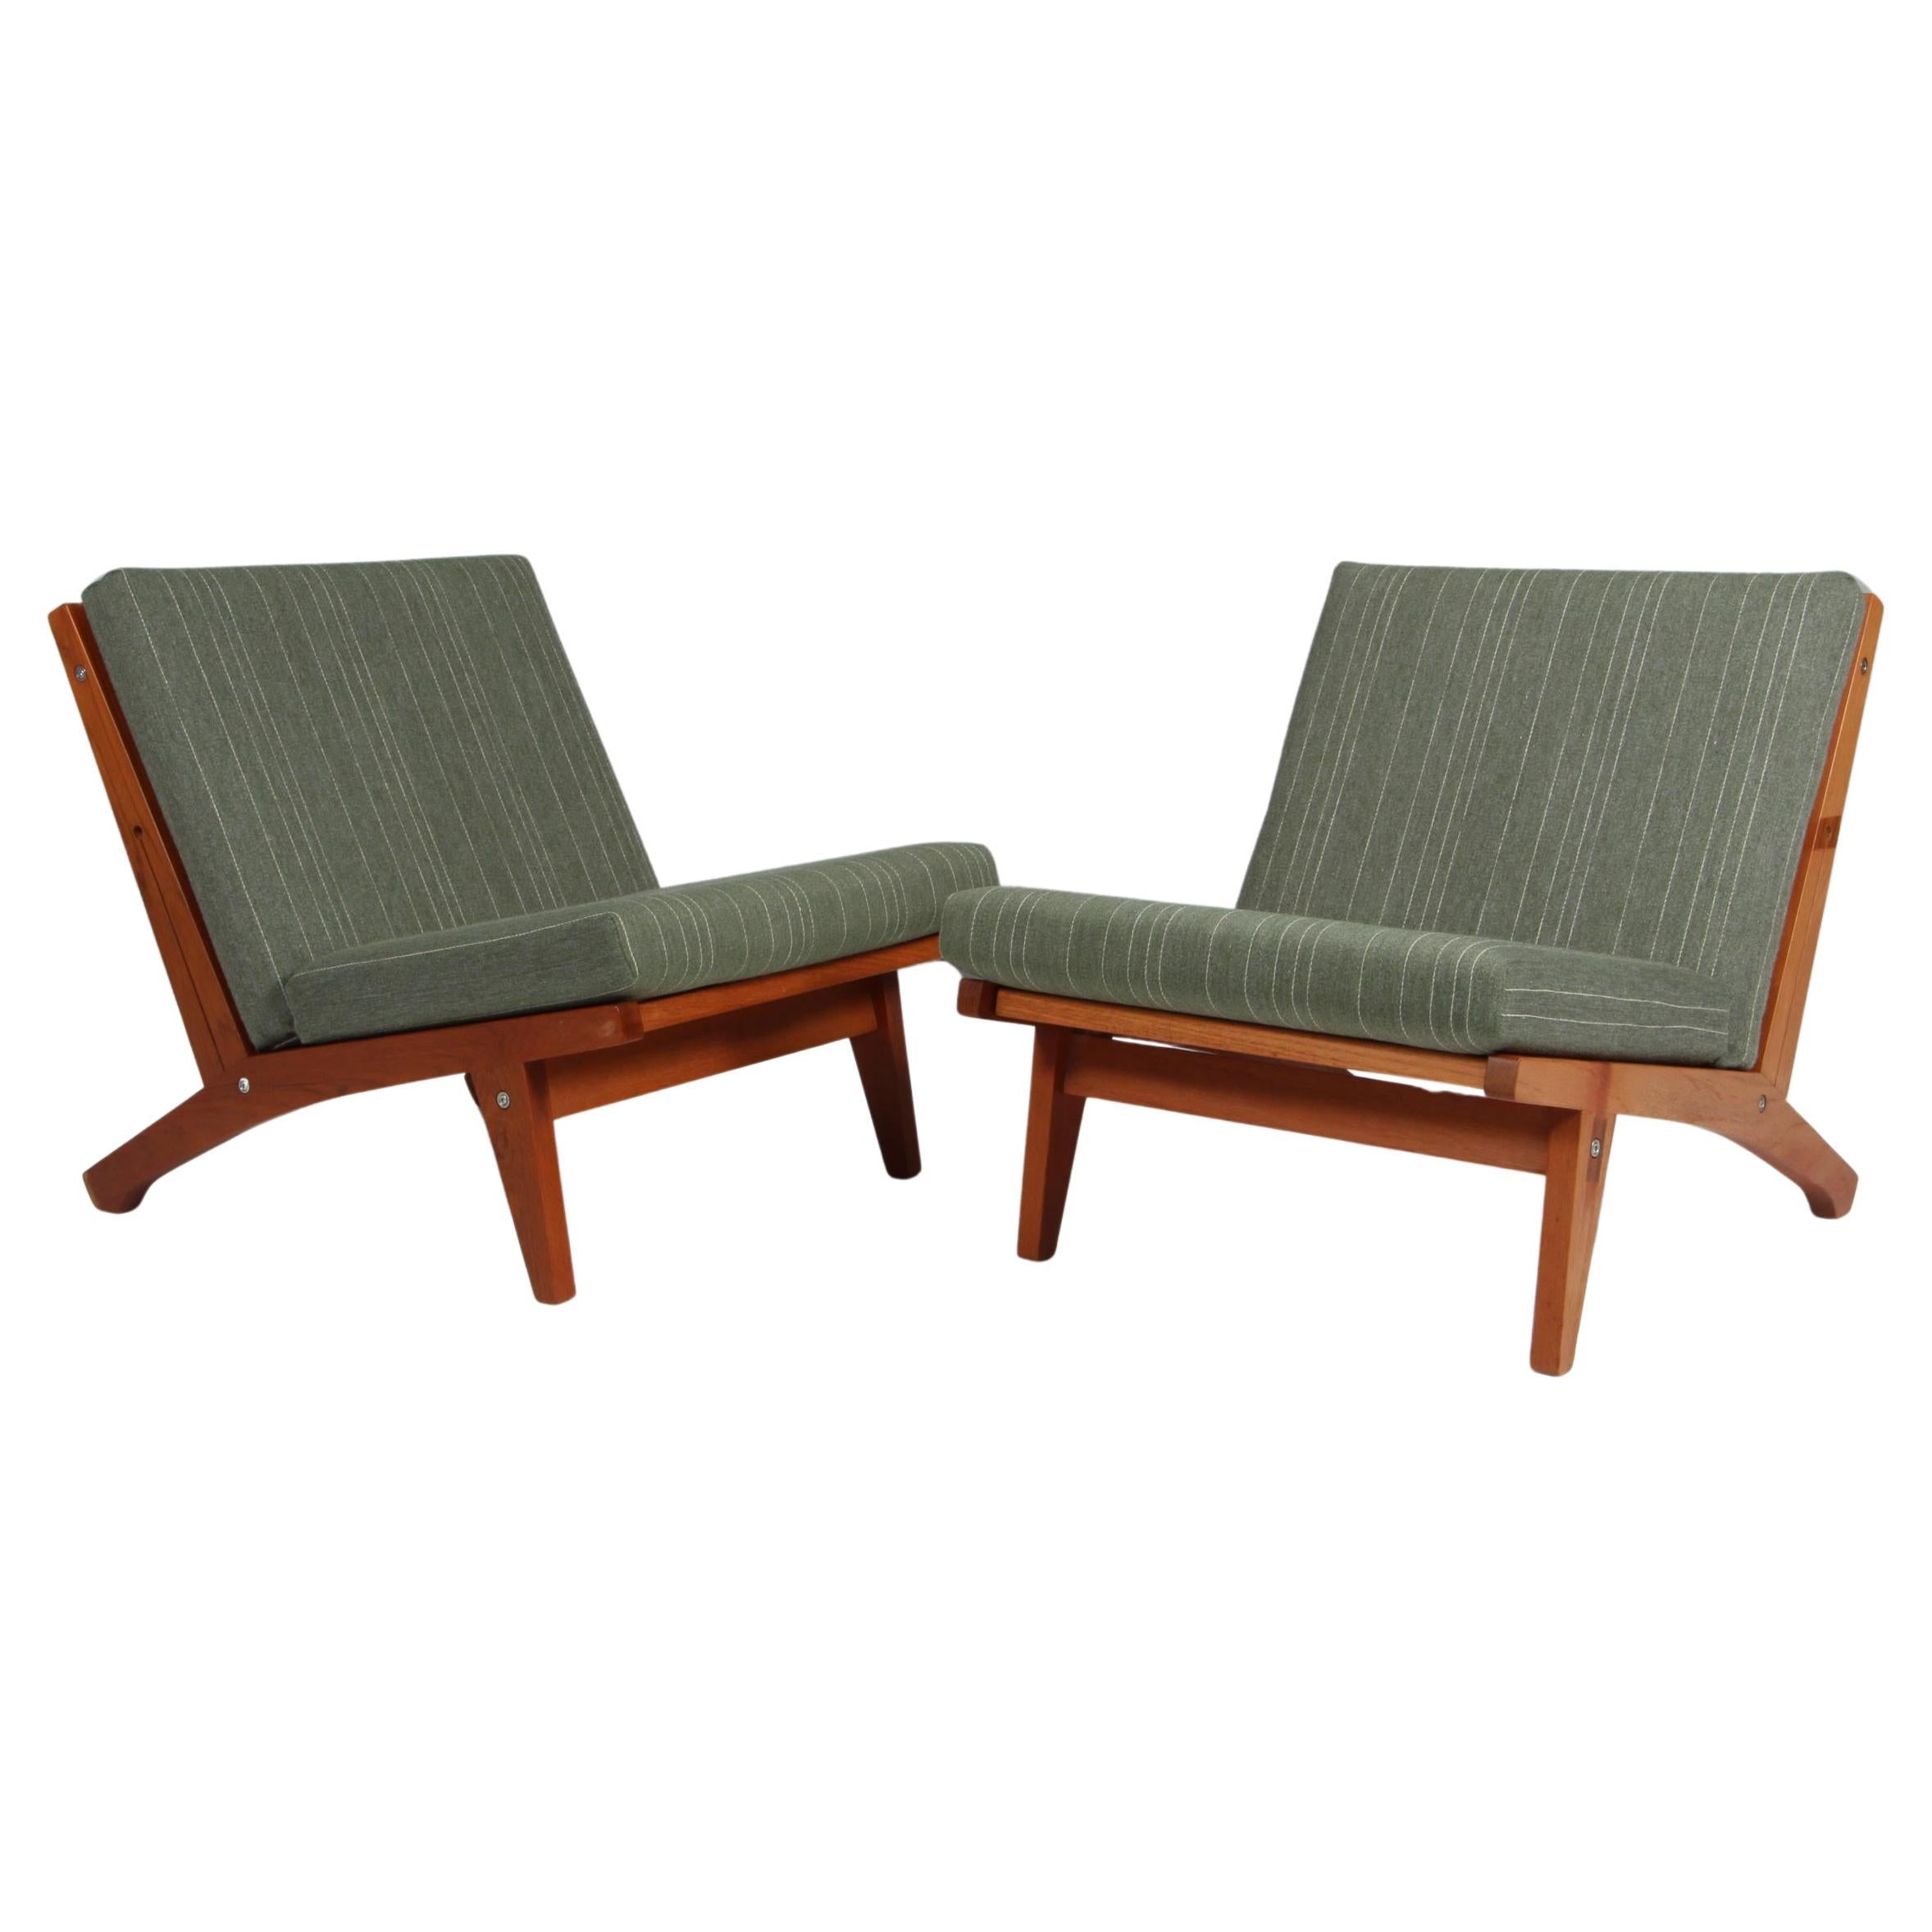 Hans J. Wegner Lounge Chairs, Model GE-370, teak